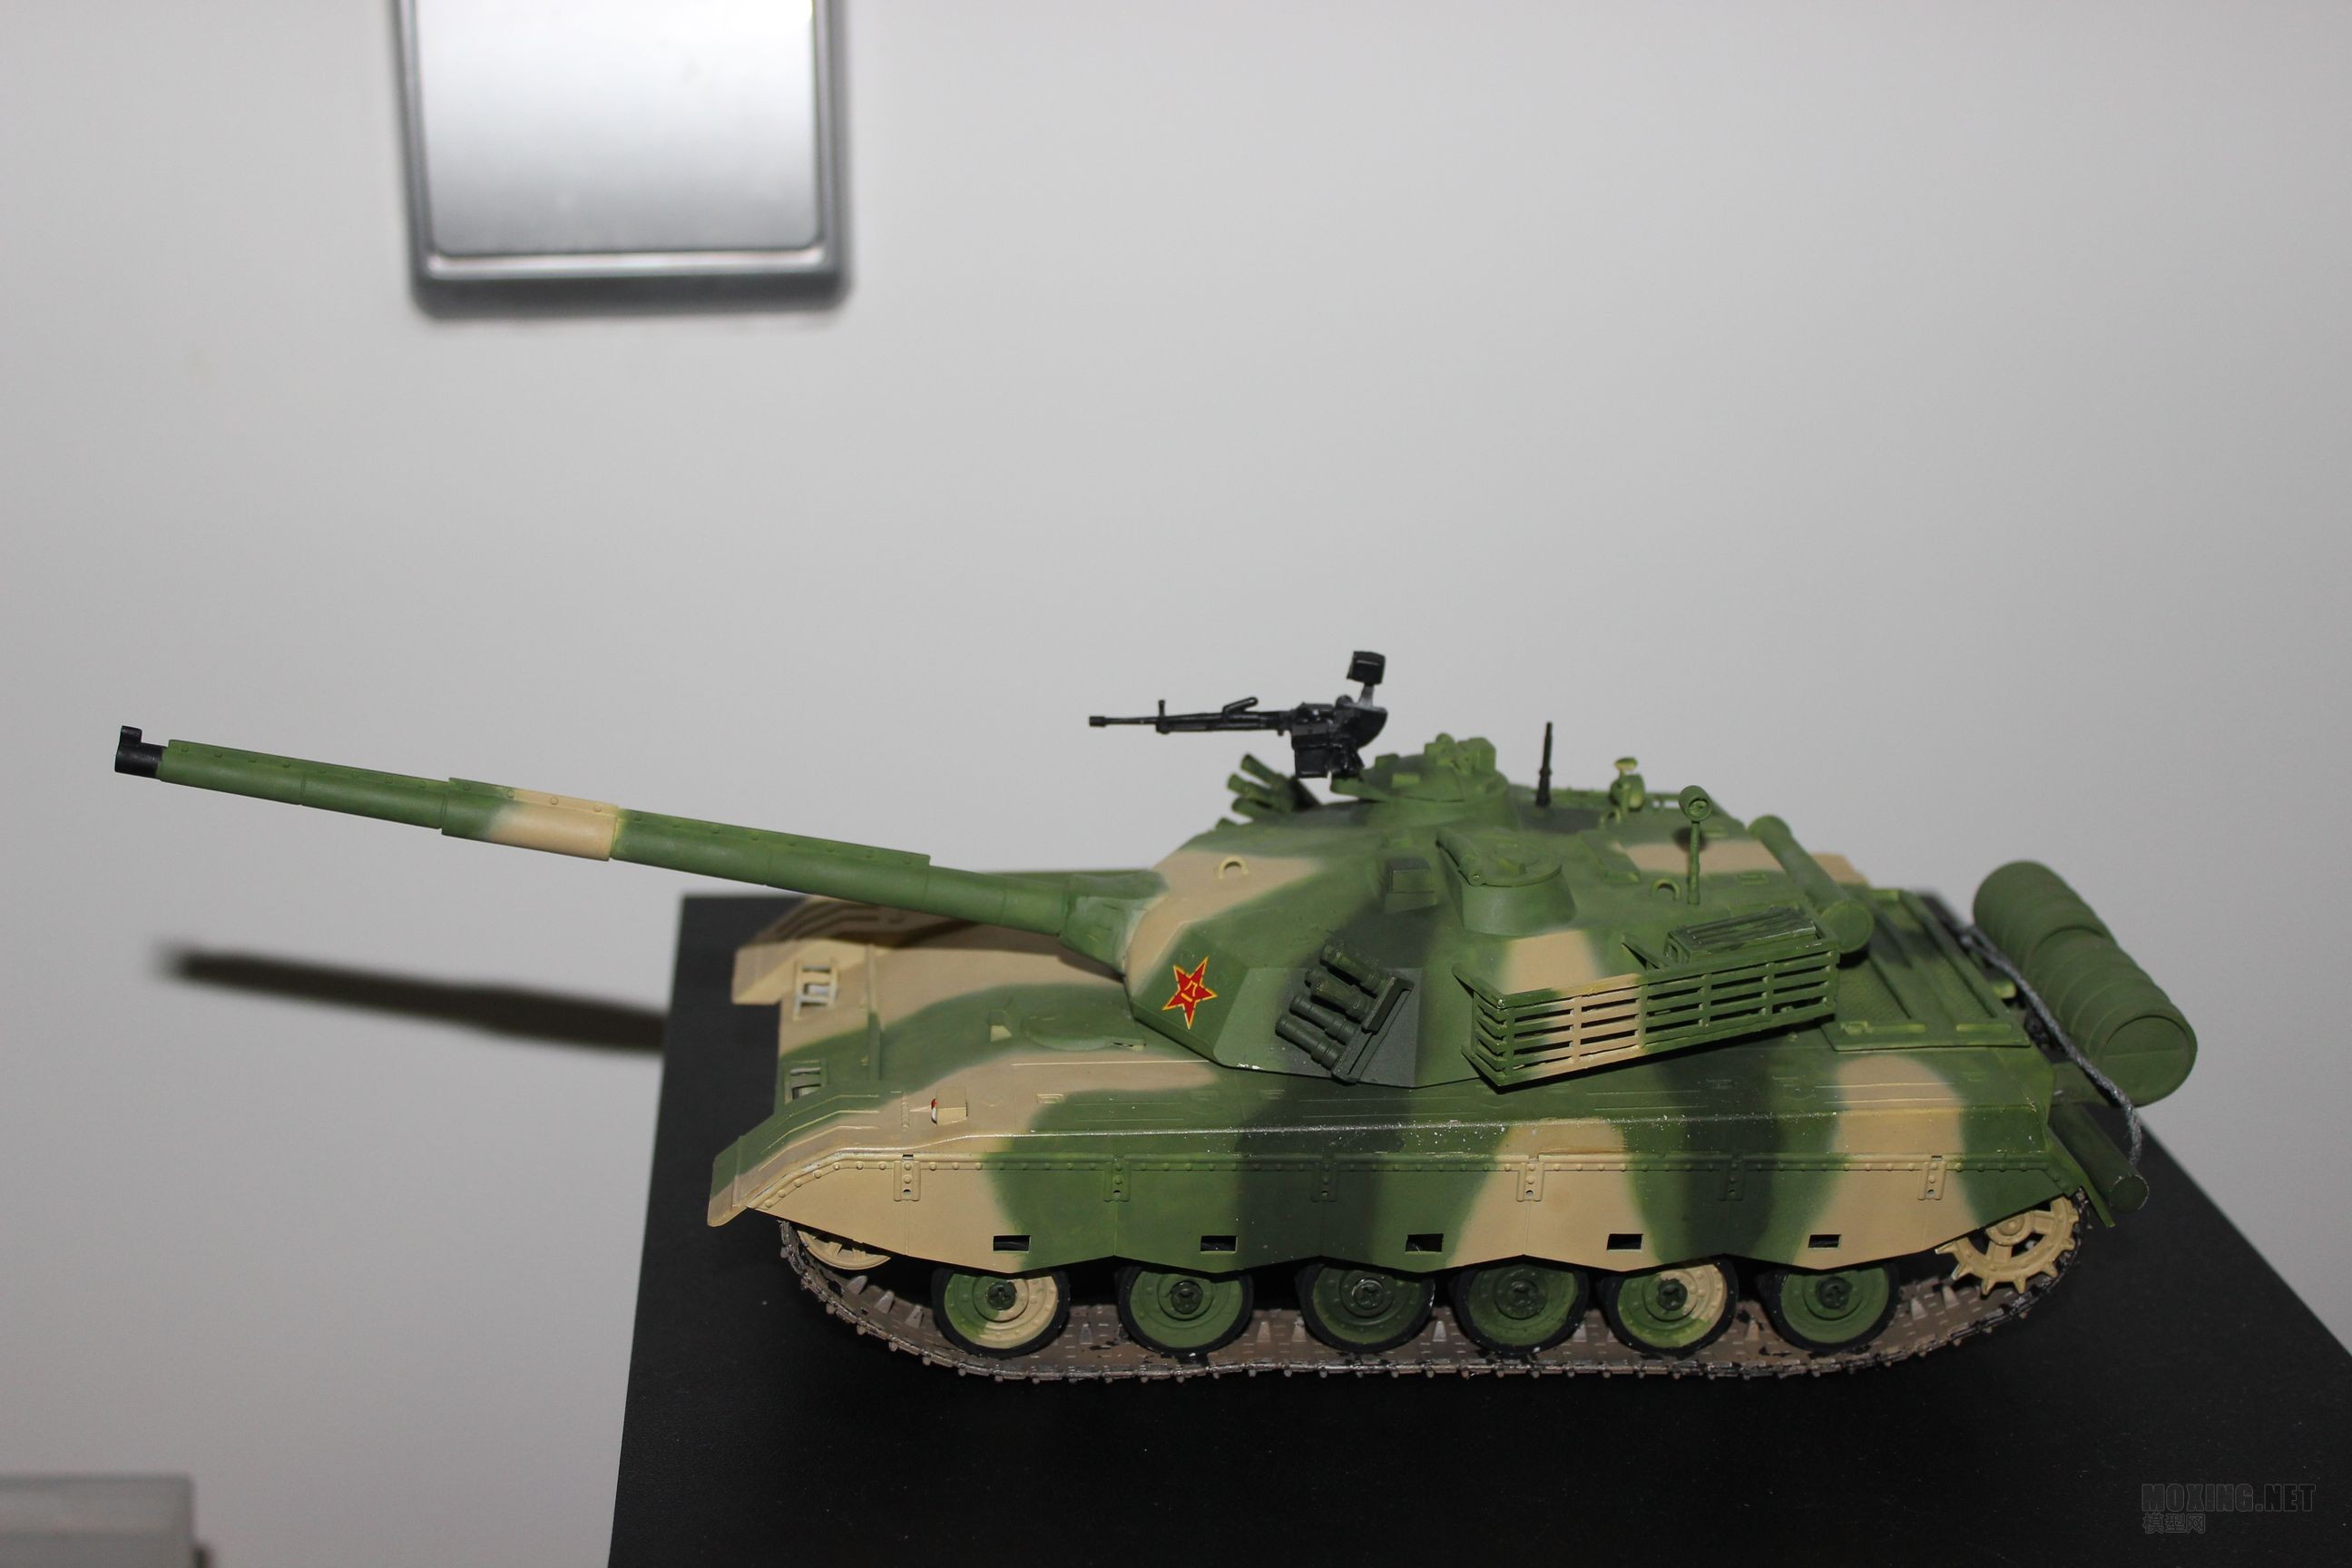 菜鸟第三单:1\/35小号手96式主战坦克 - 坦克及装甲车辆展示区 - 模型网论坛